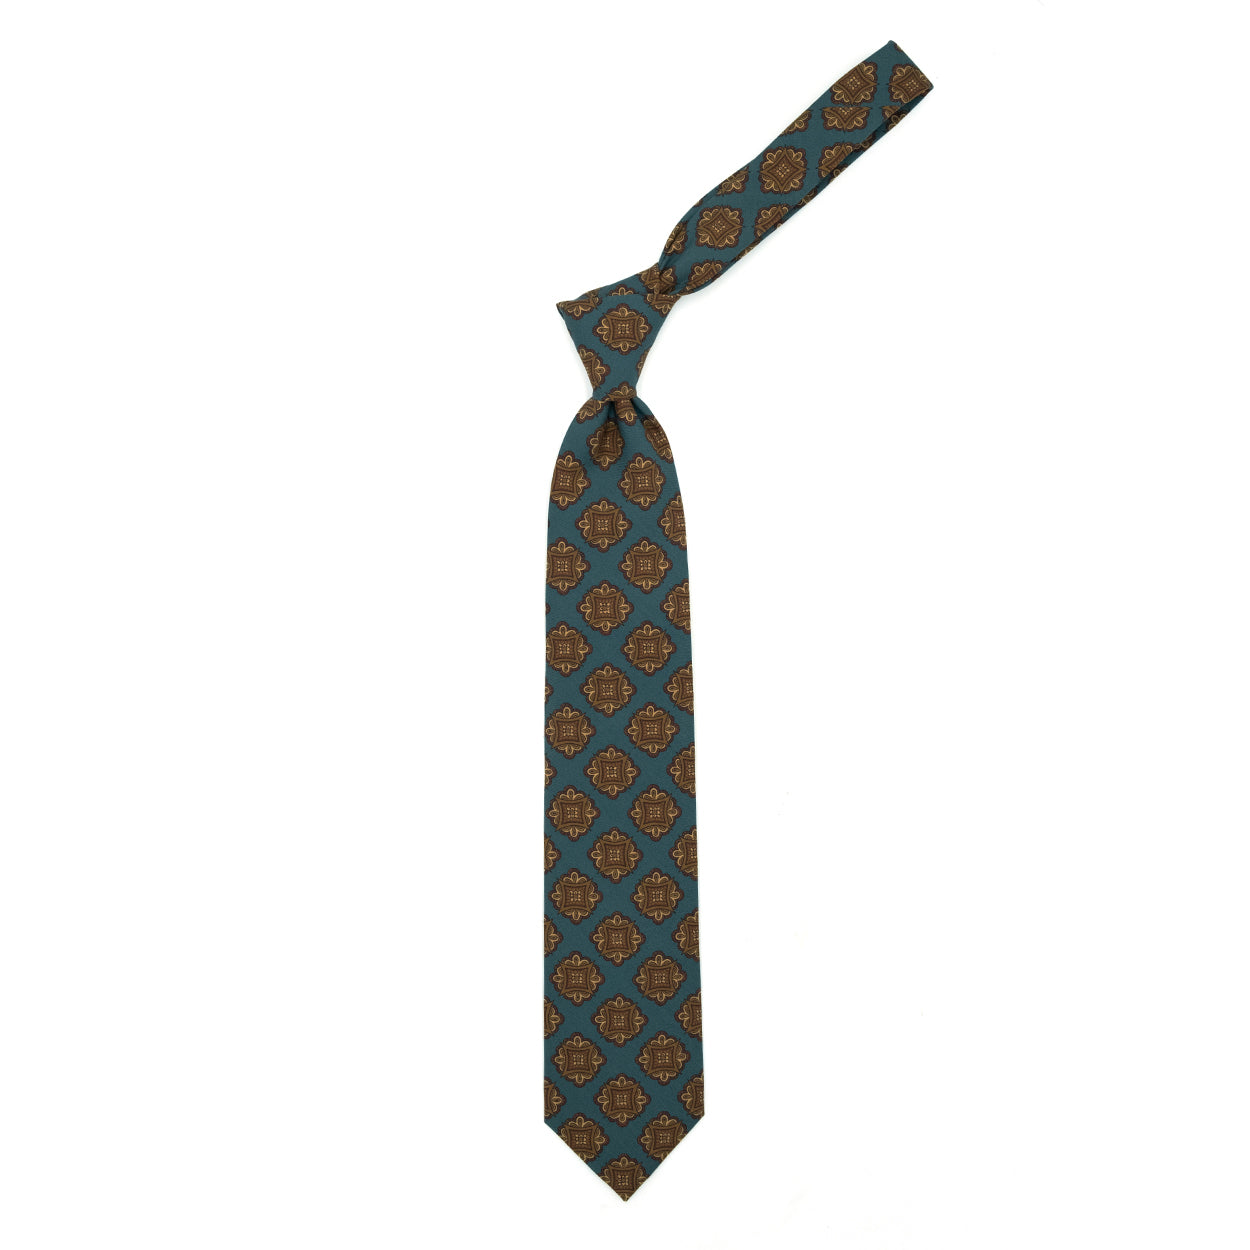 Cravatta verde petrolio con medaglioni marroni, beige e bordeaux